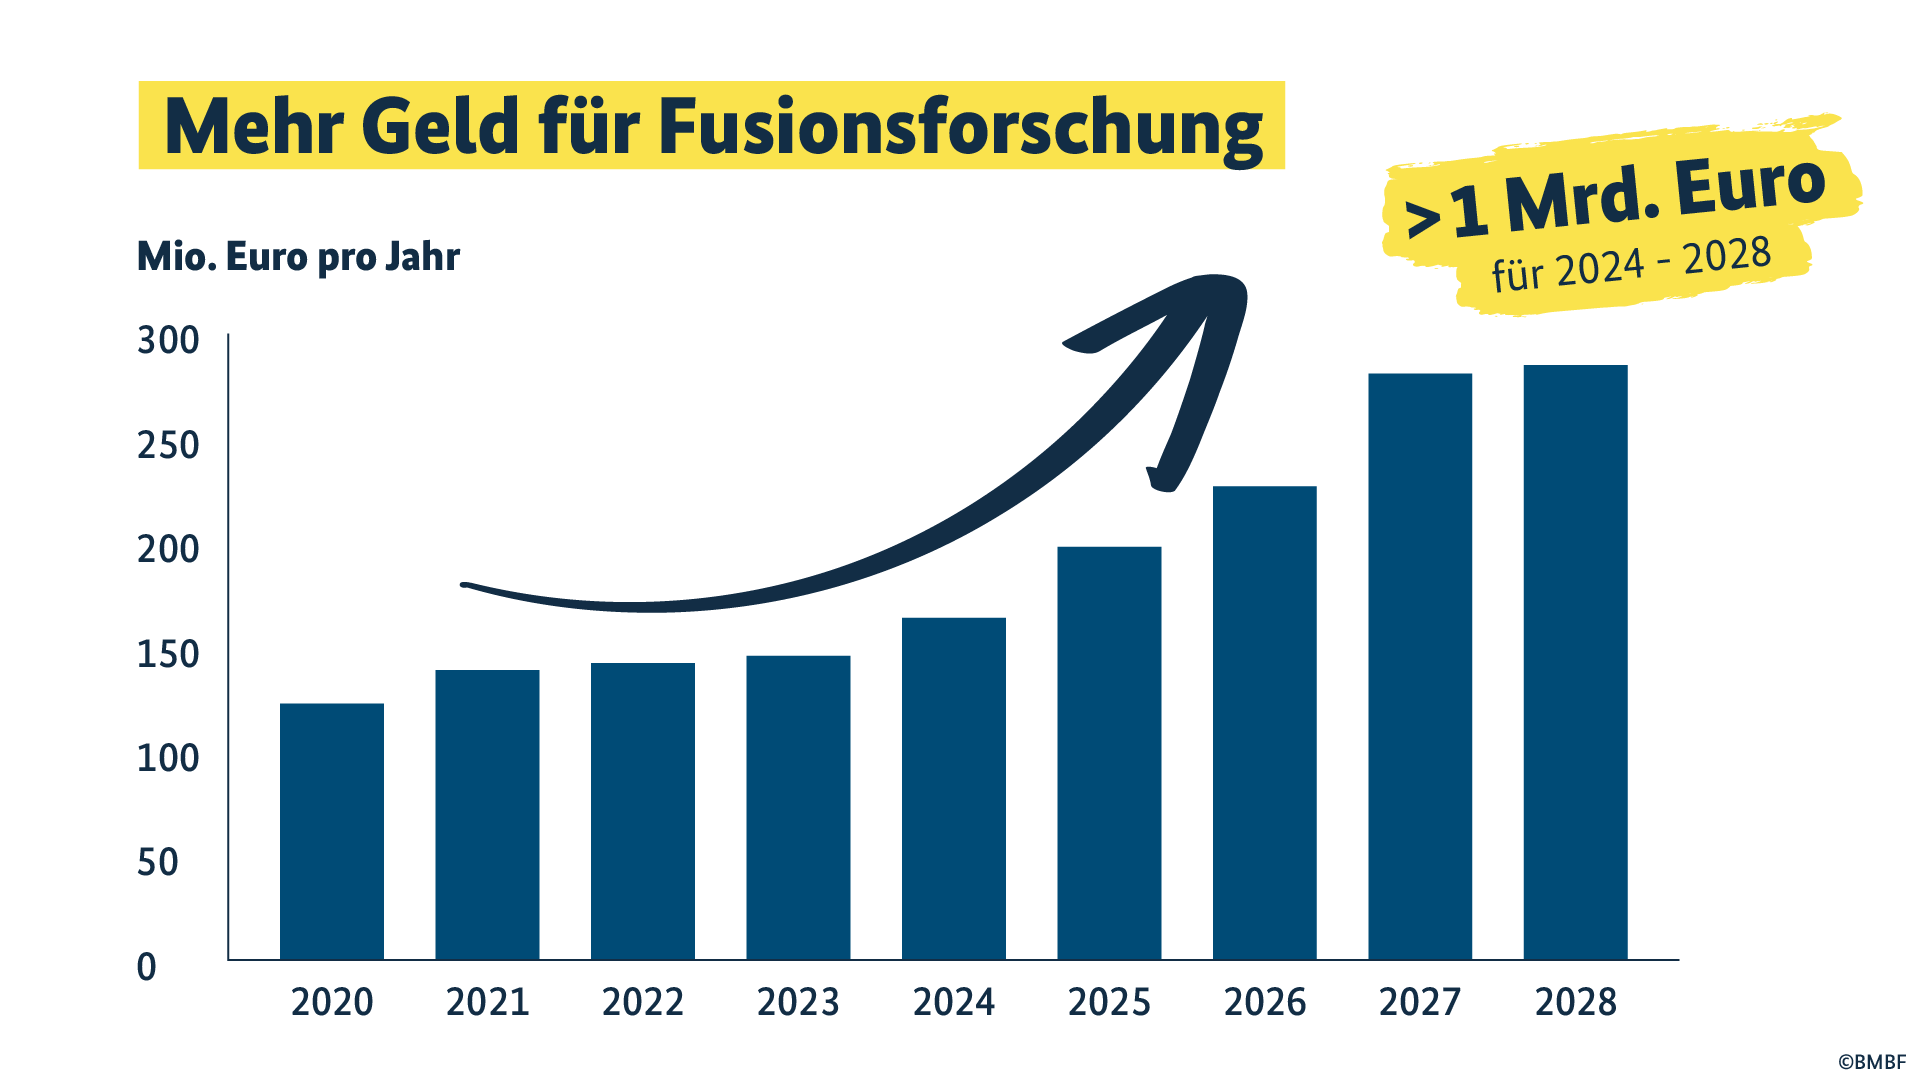 Zwischen 2024 und 2028 investiert das BMBF mehr als eine Milliarde Euro in die Fusionsforschung